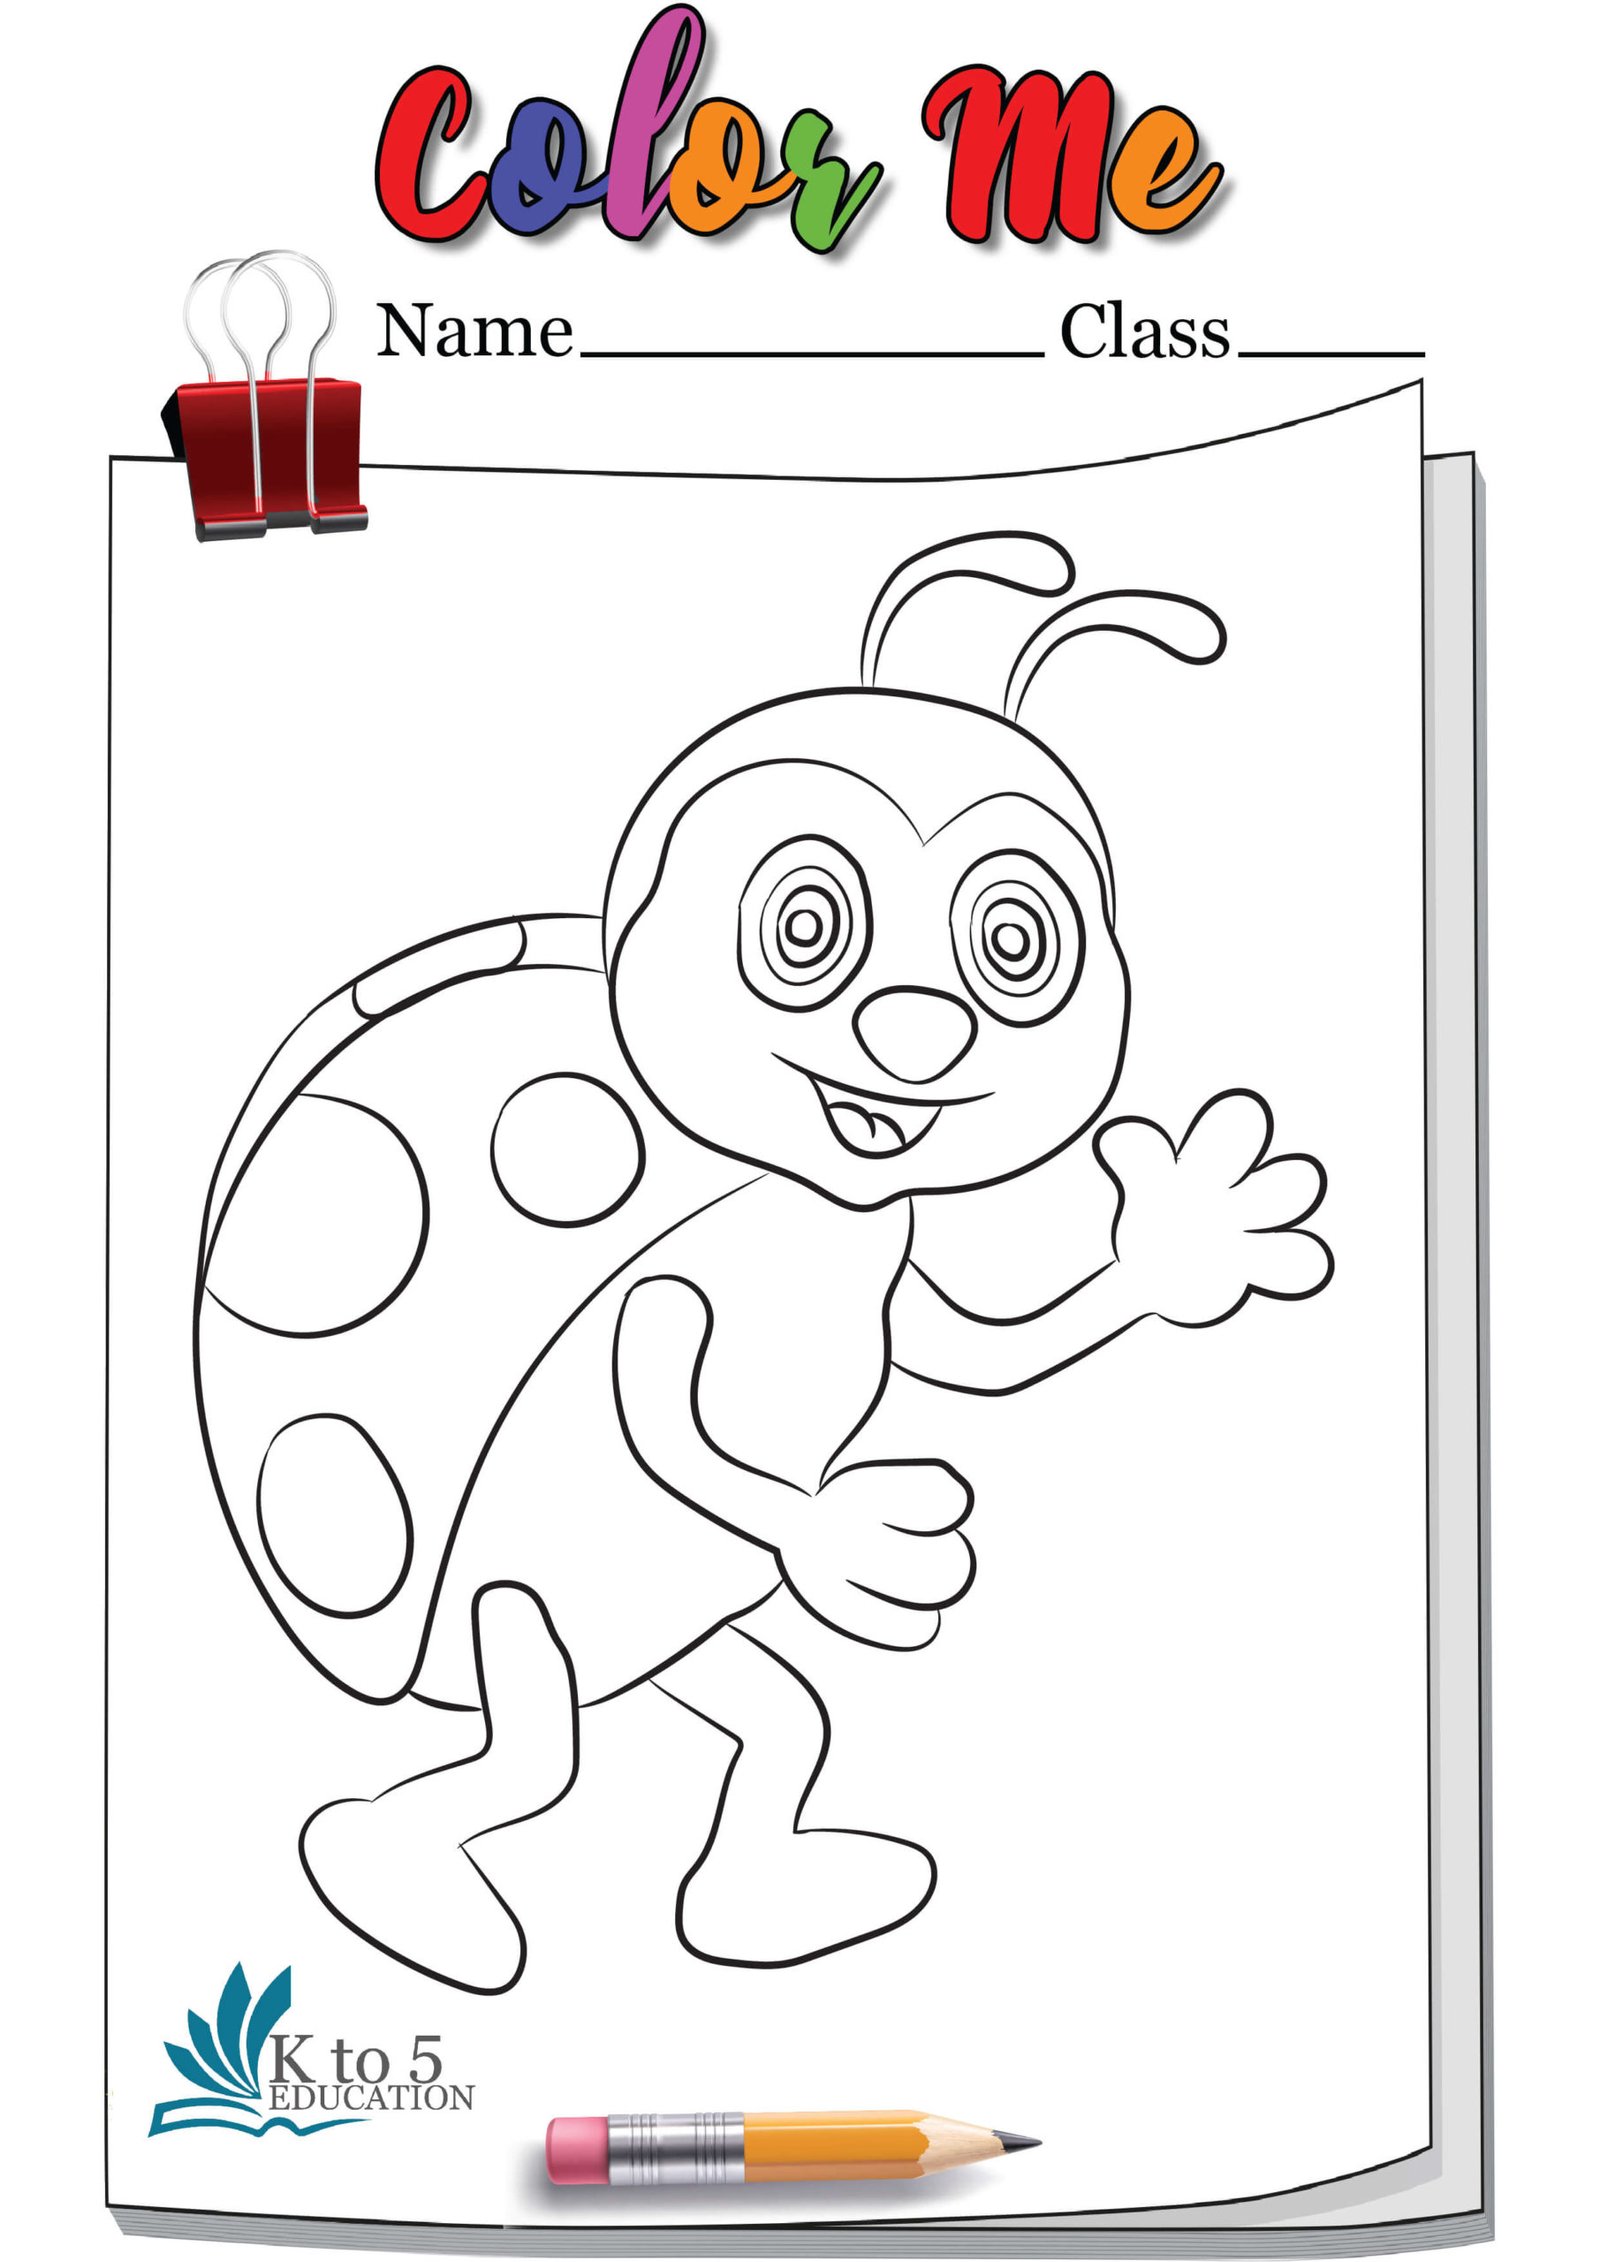 Walking Ladybug coloring page worksheet